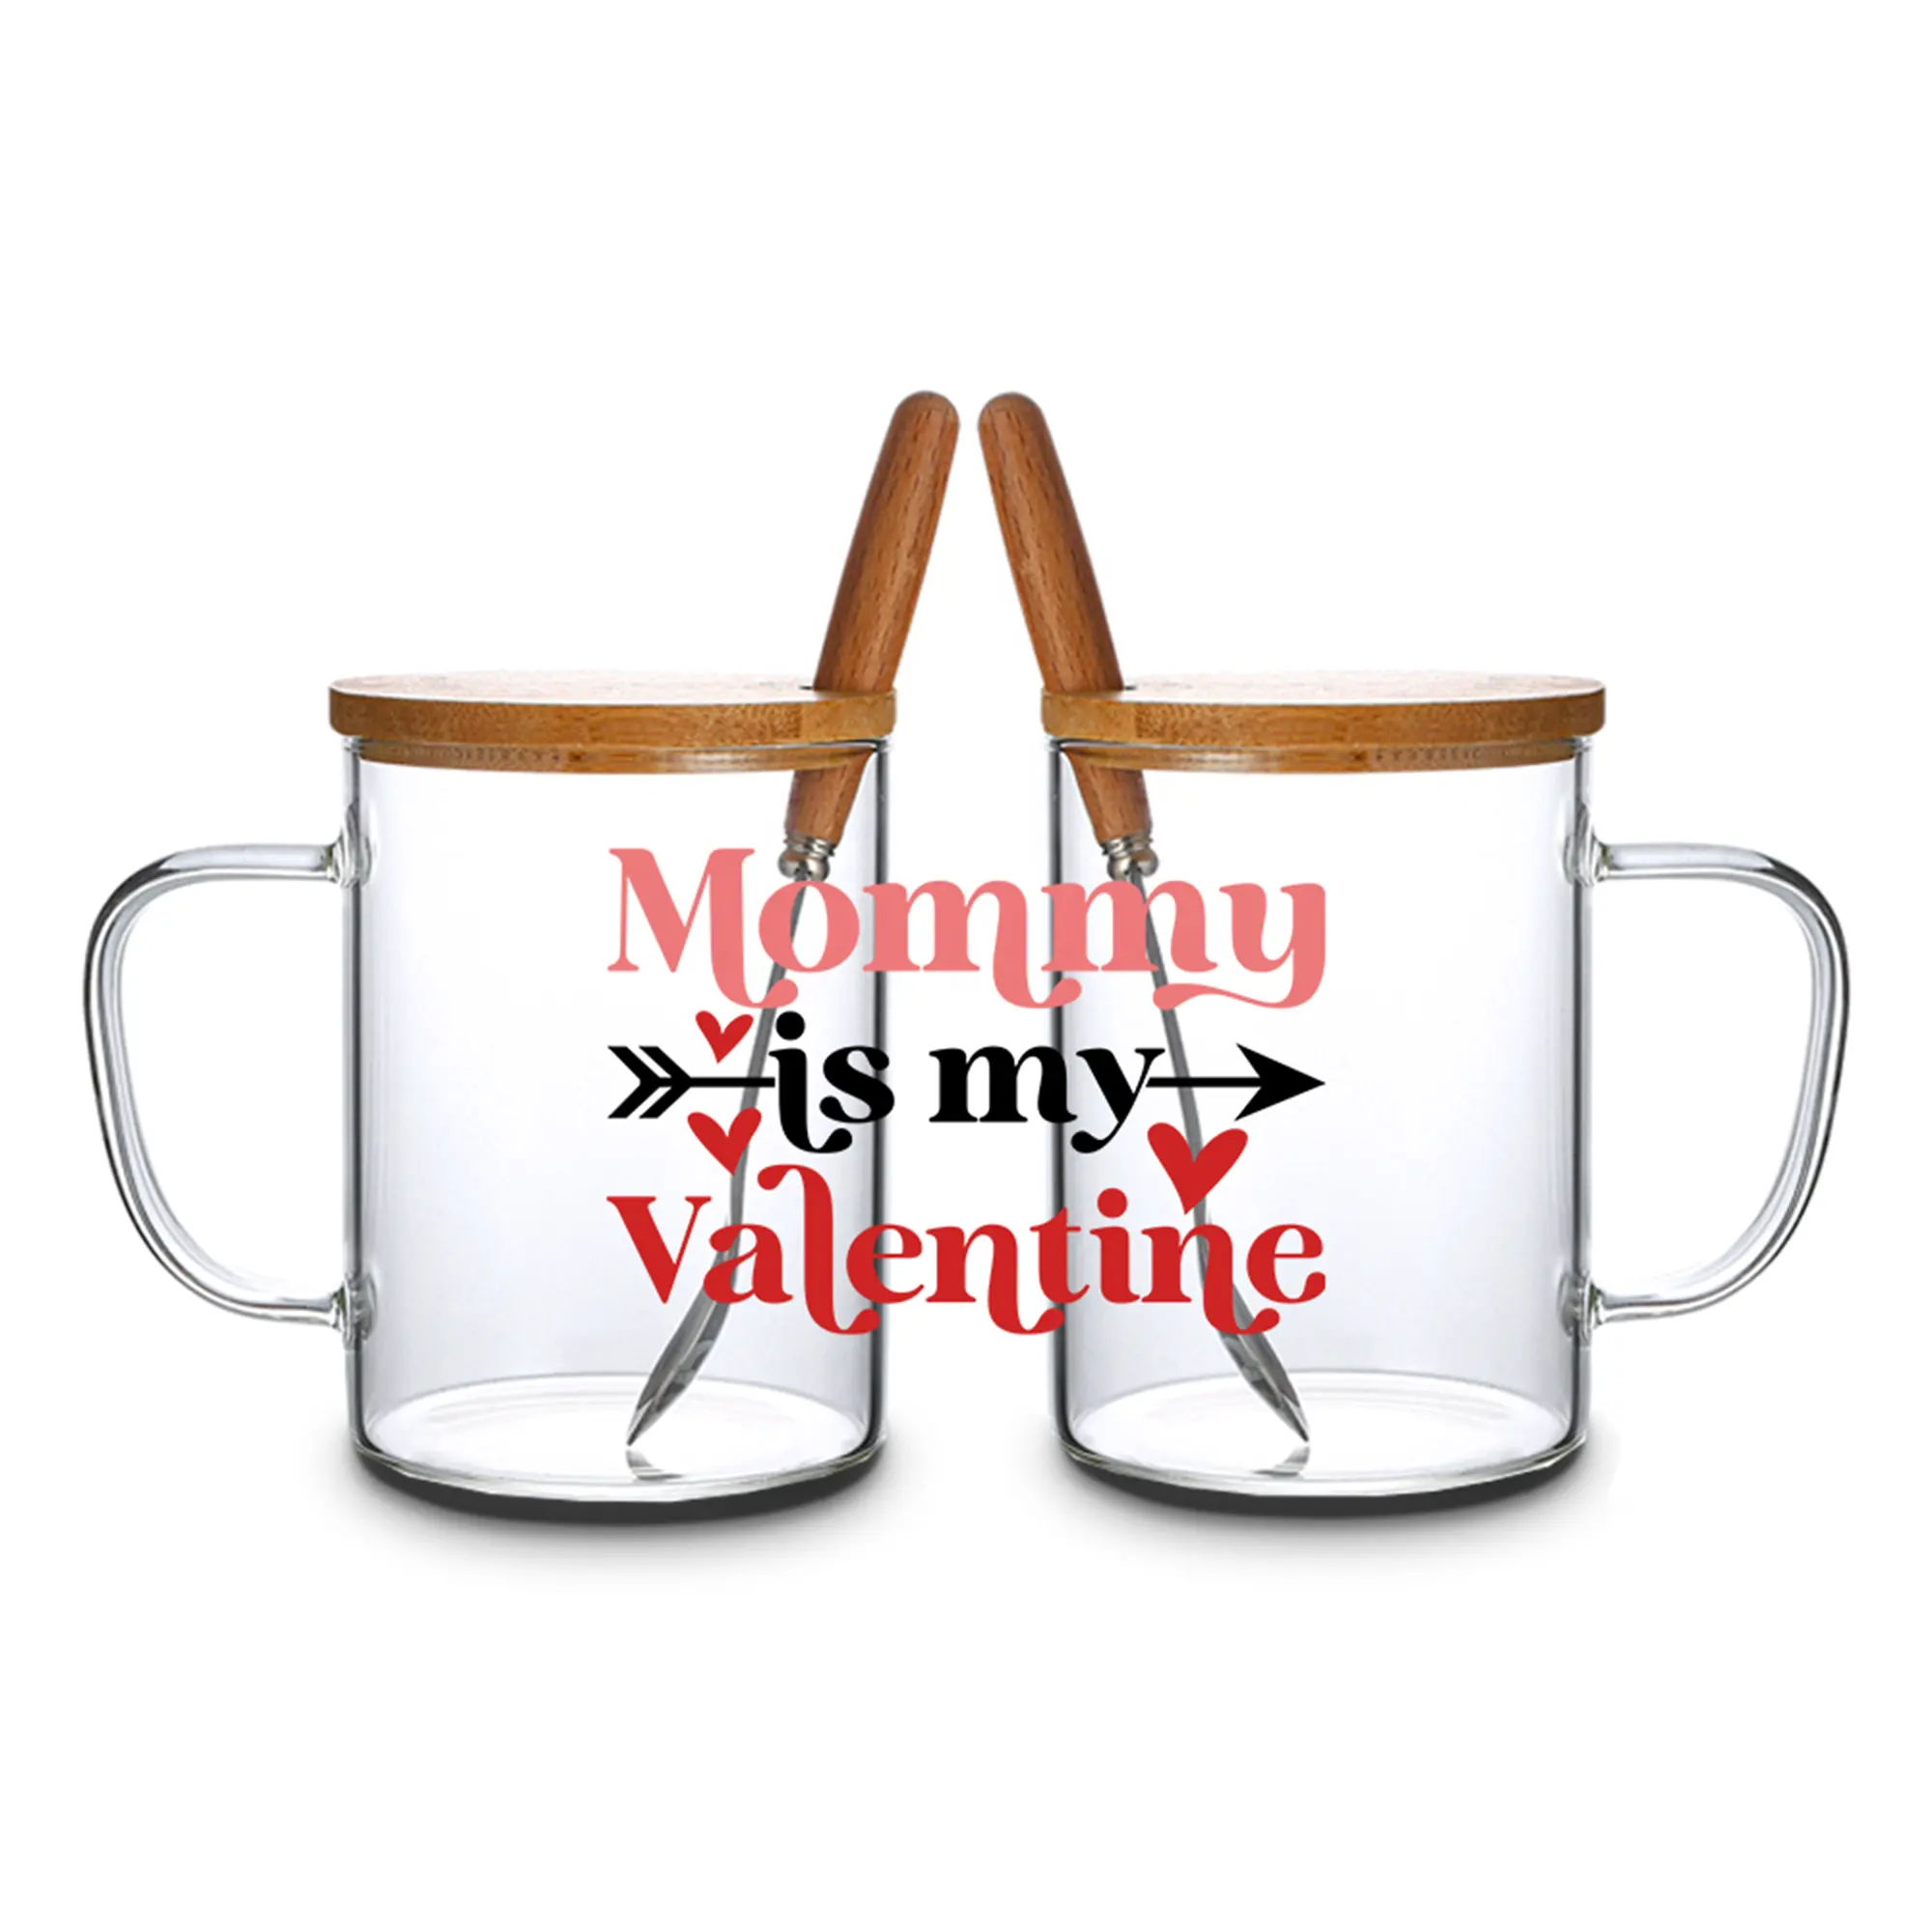 カスタムロゴガラスカップ15オンス耐熱カスタムコーヒーマグ竹蓋とスプーン付きバレンタインマザー彼女のギフト